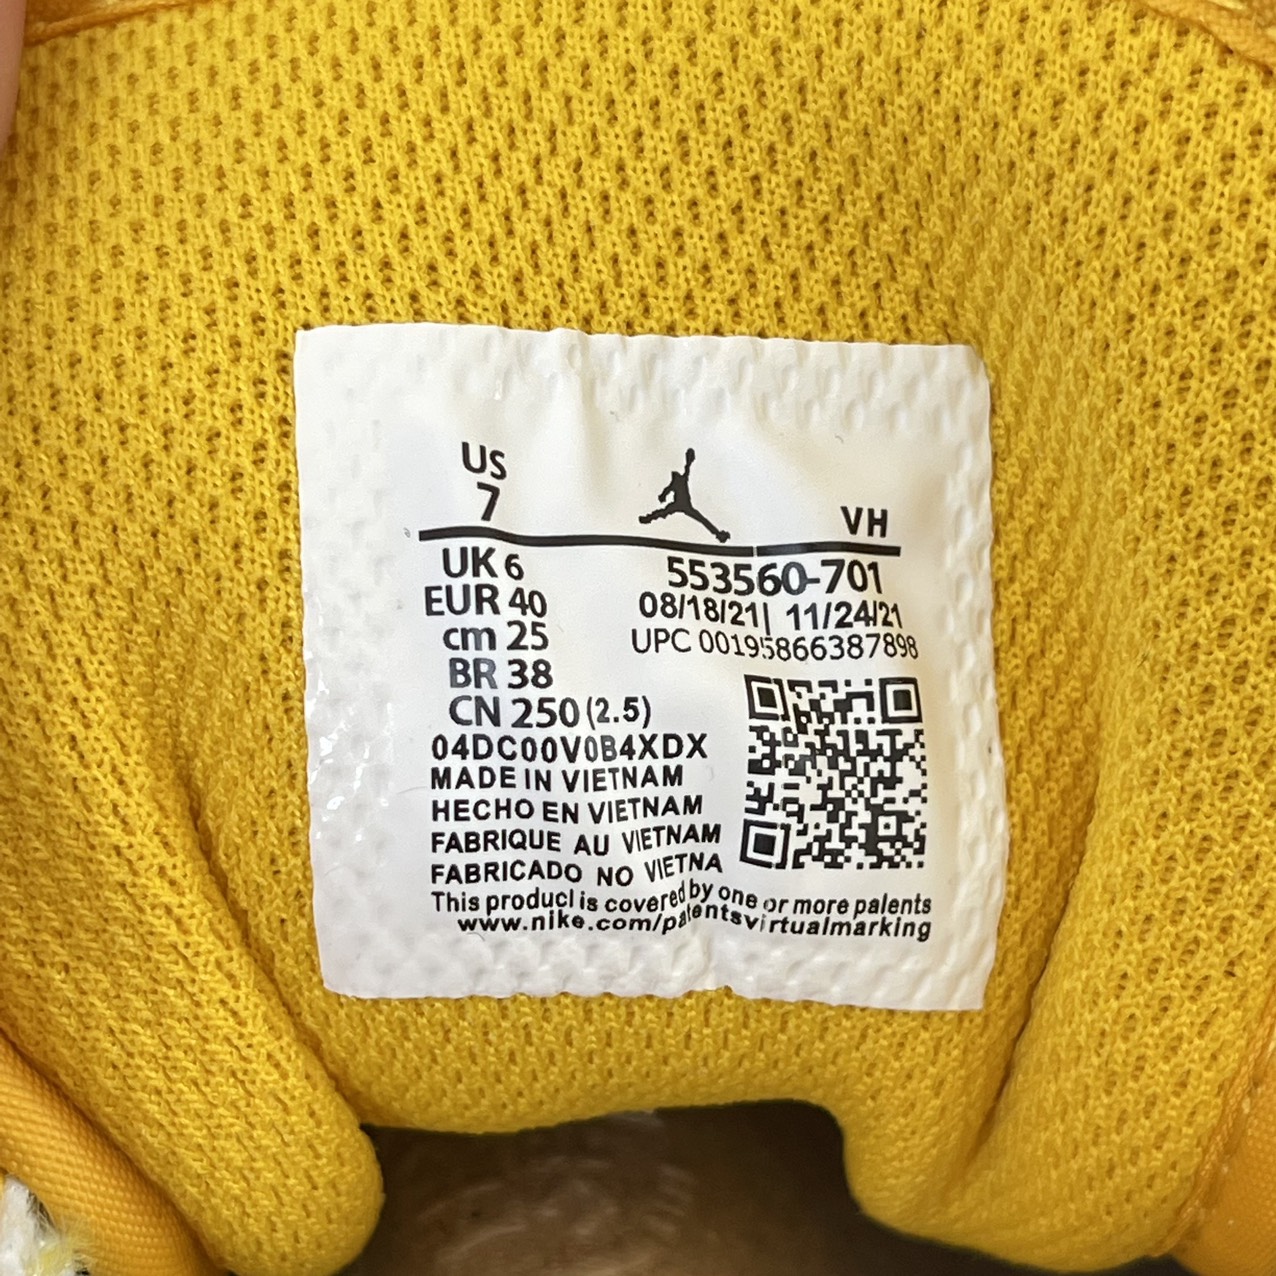 Made in Vietnam là cụm từ xuất hiện nhiều trên giày Nike